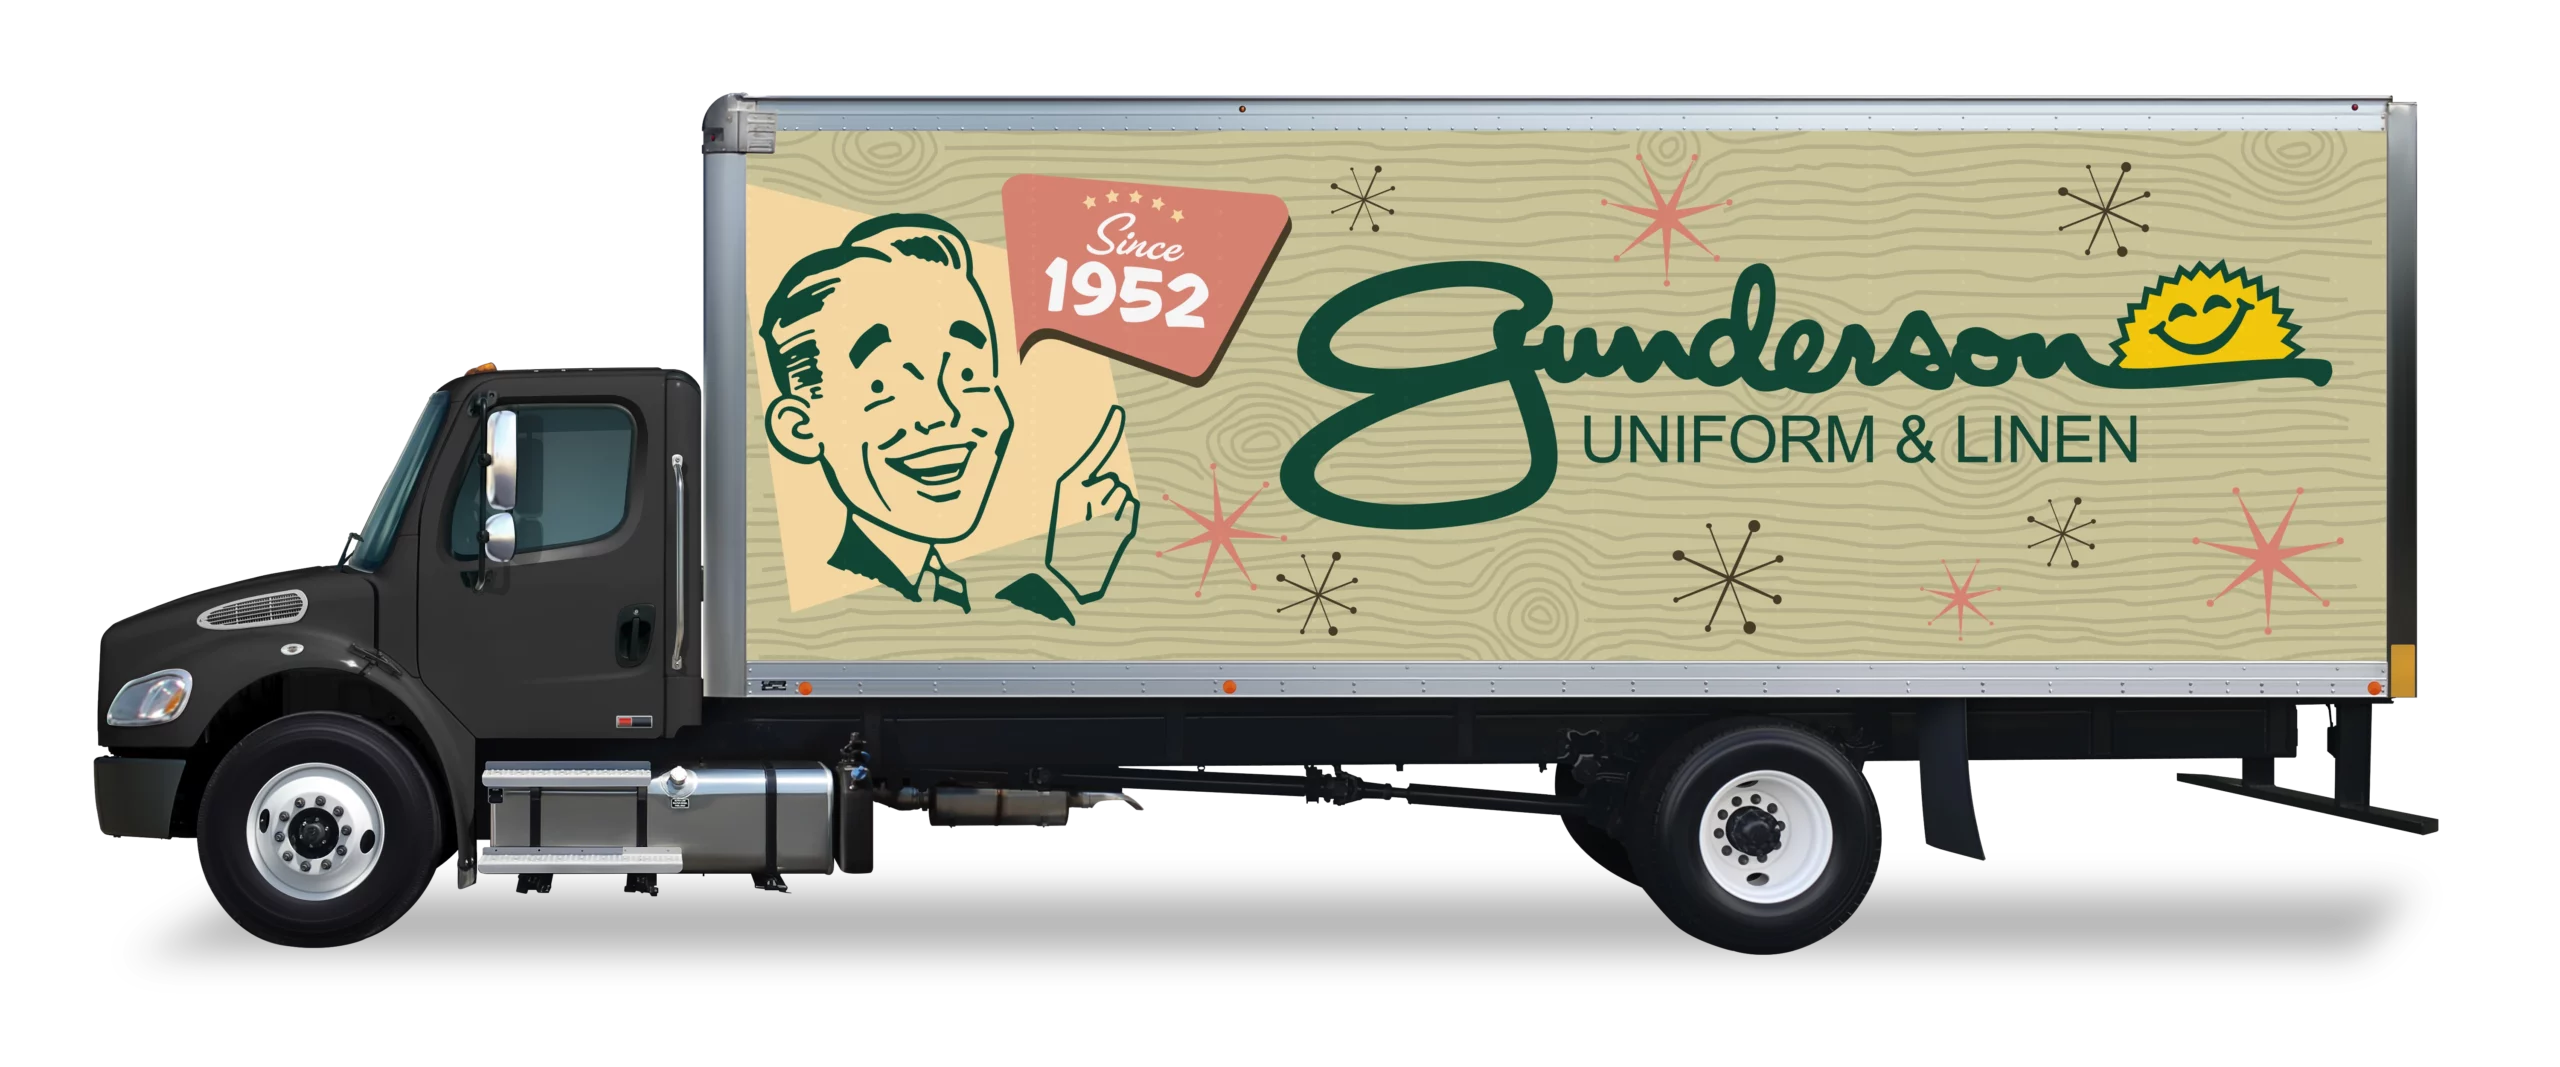 Gunderson Uniform & Linen truck